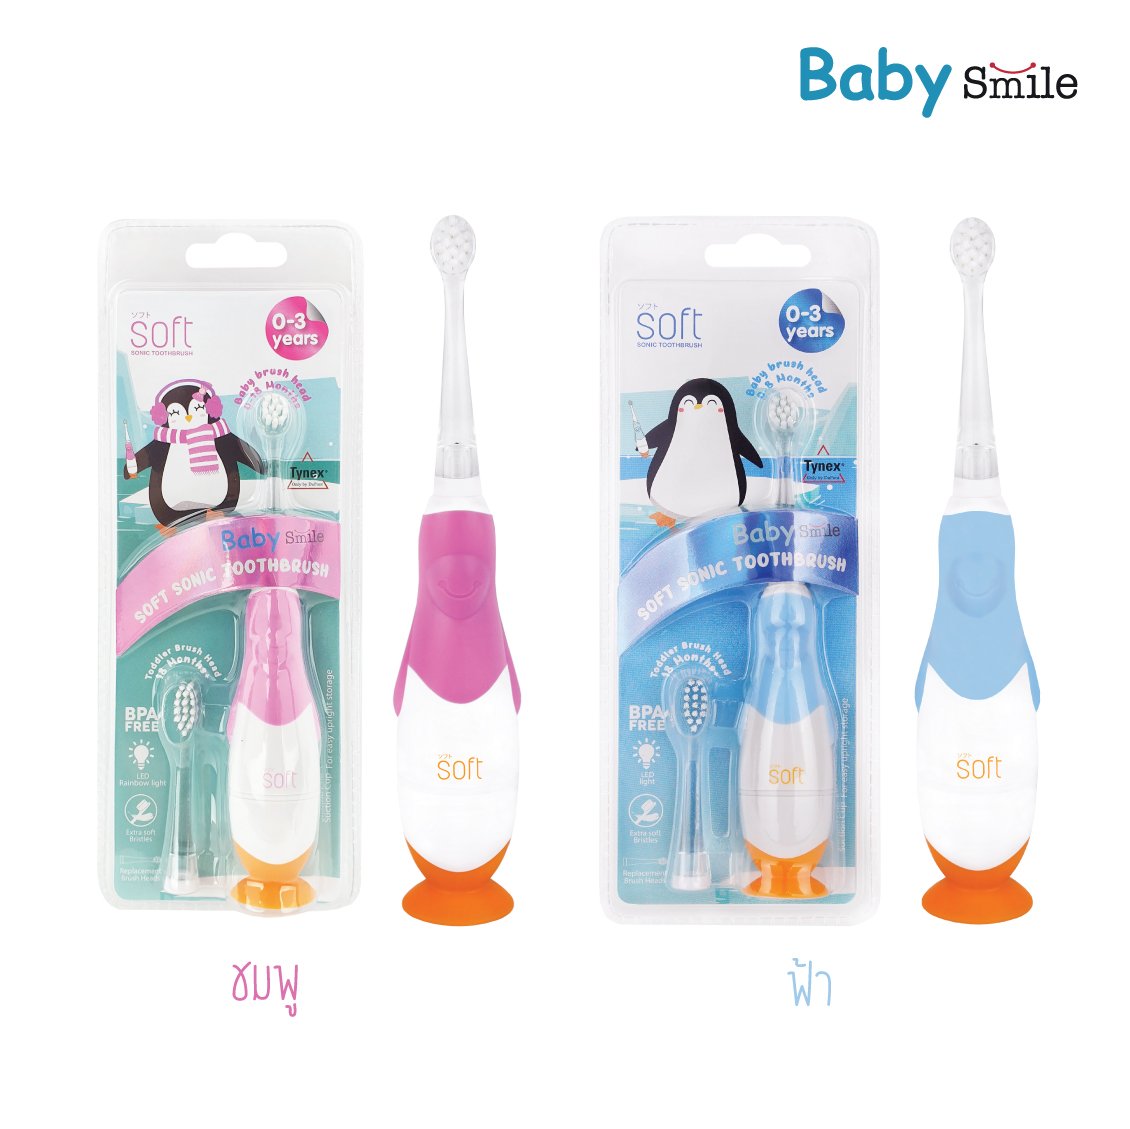 แปรงสีฟันไฟฟ้า SOFT รุ่น Baby Smile 0-3 ขวบ